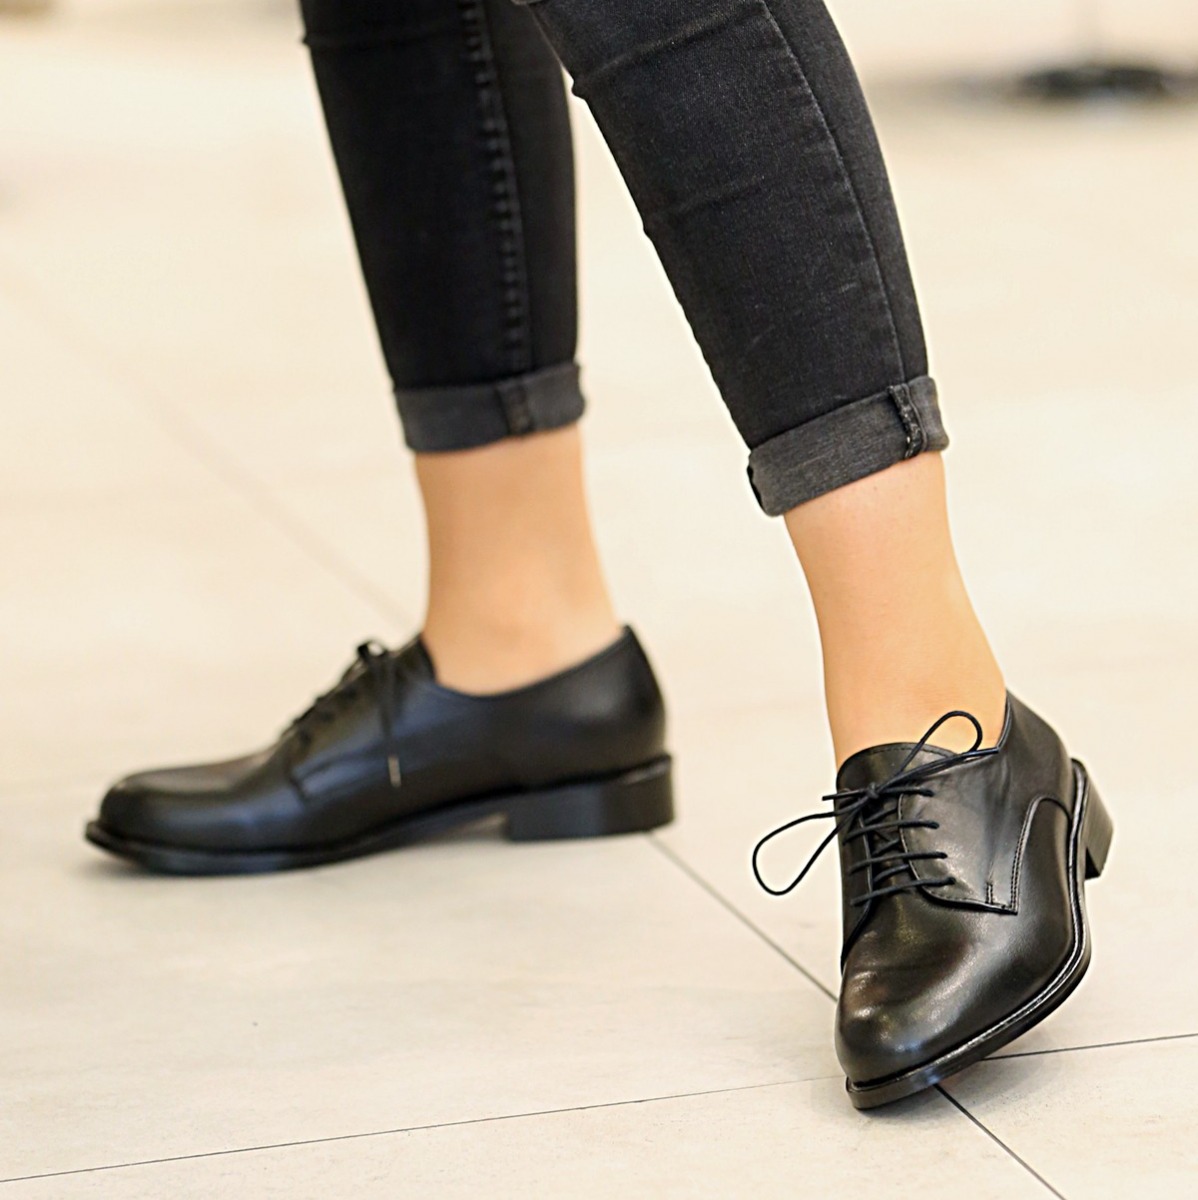 Flo - Kadın Klasik Ayakkabı Siyah. 3